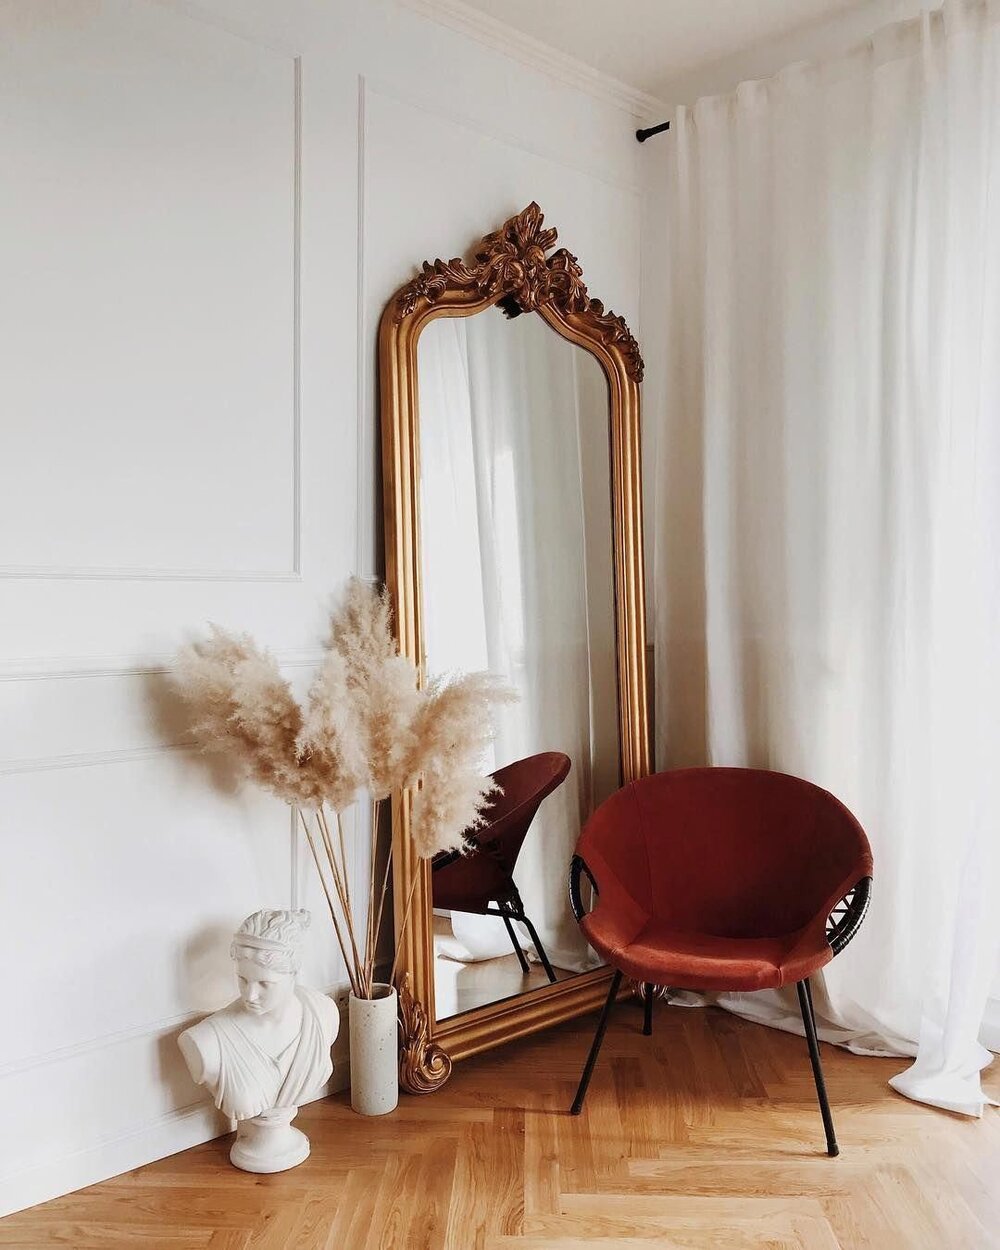 ilaria fatone inspirations - un miroir oversize posé au sol dans une entrée